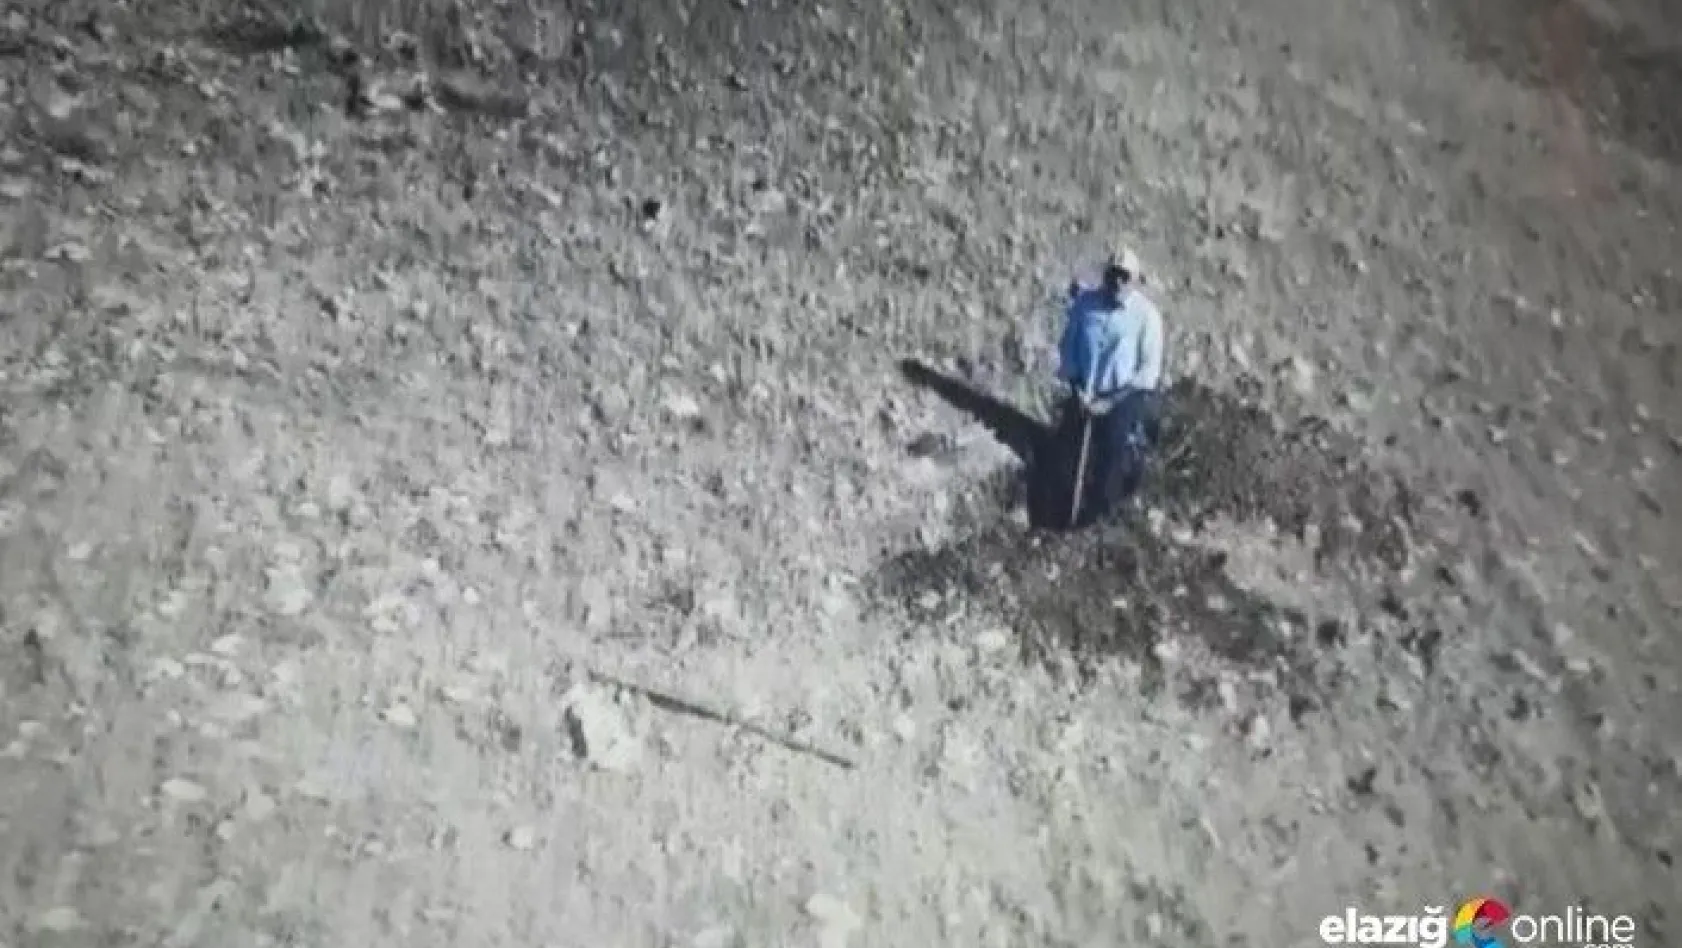 Elazığ'da kaçak kazı yapan adam kendisini çeken drone'u taşladı